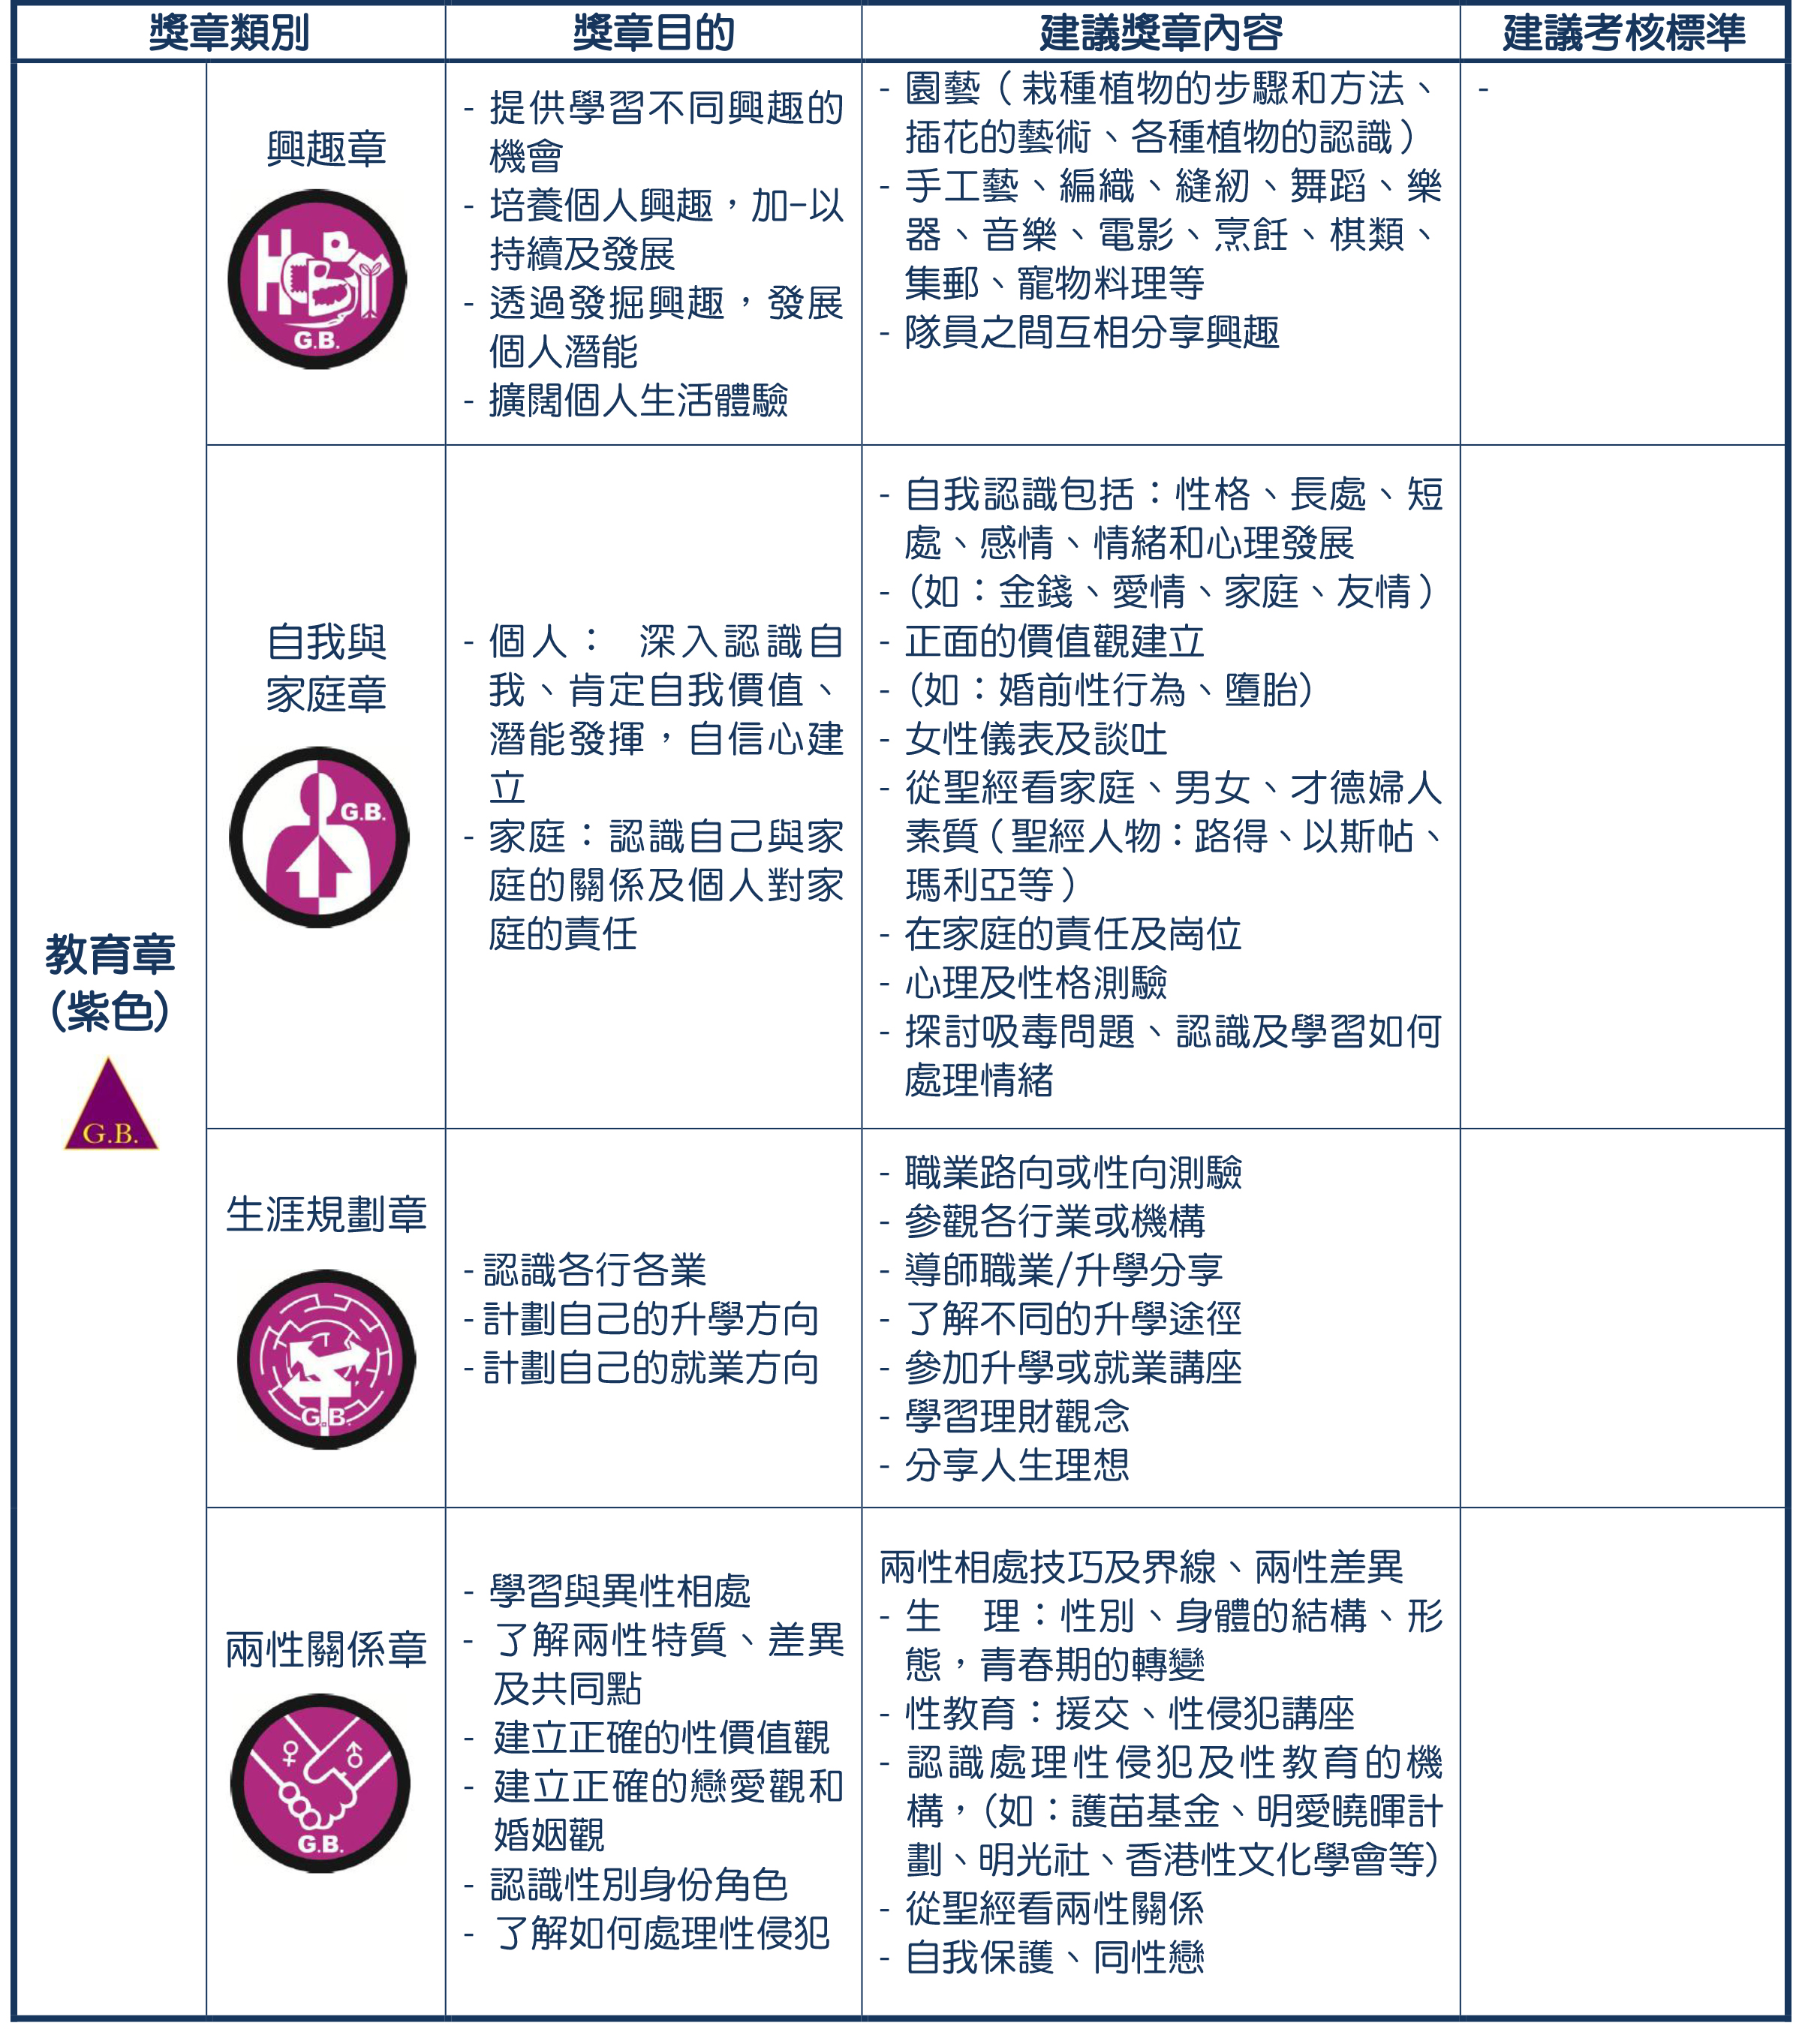 6- 獎章制度-深資組紫(revised 2020829)